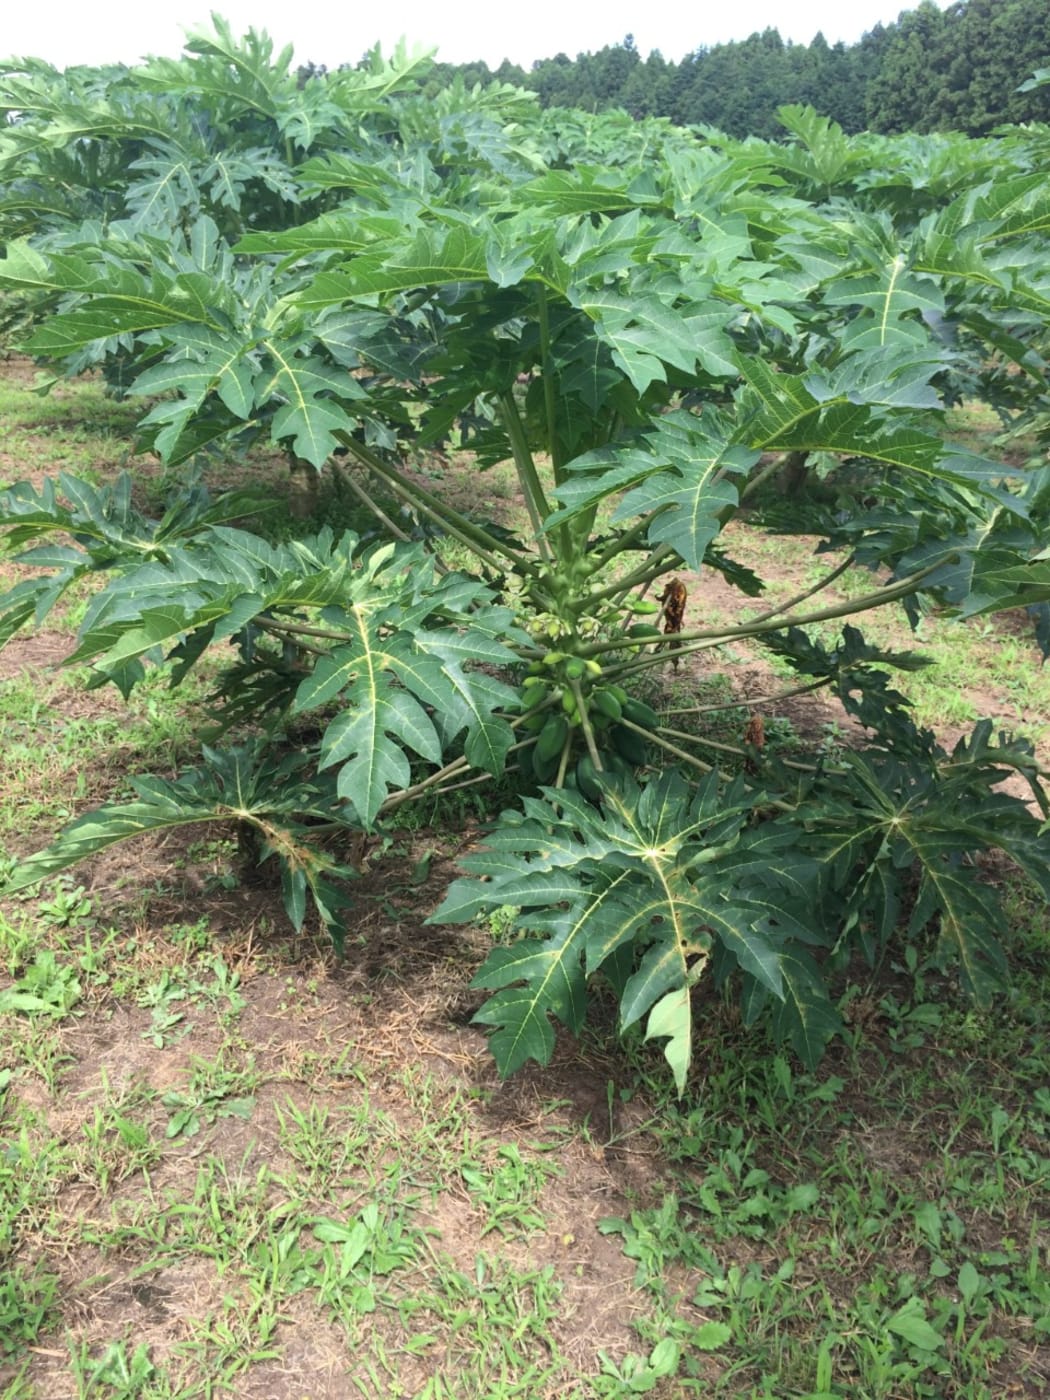 A papaya tree prior to harvest.